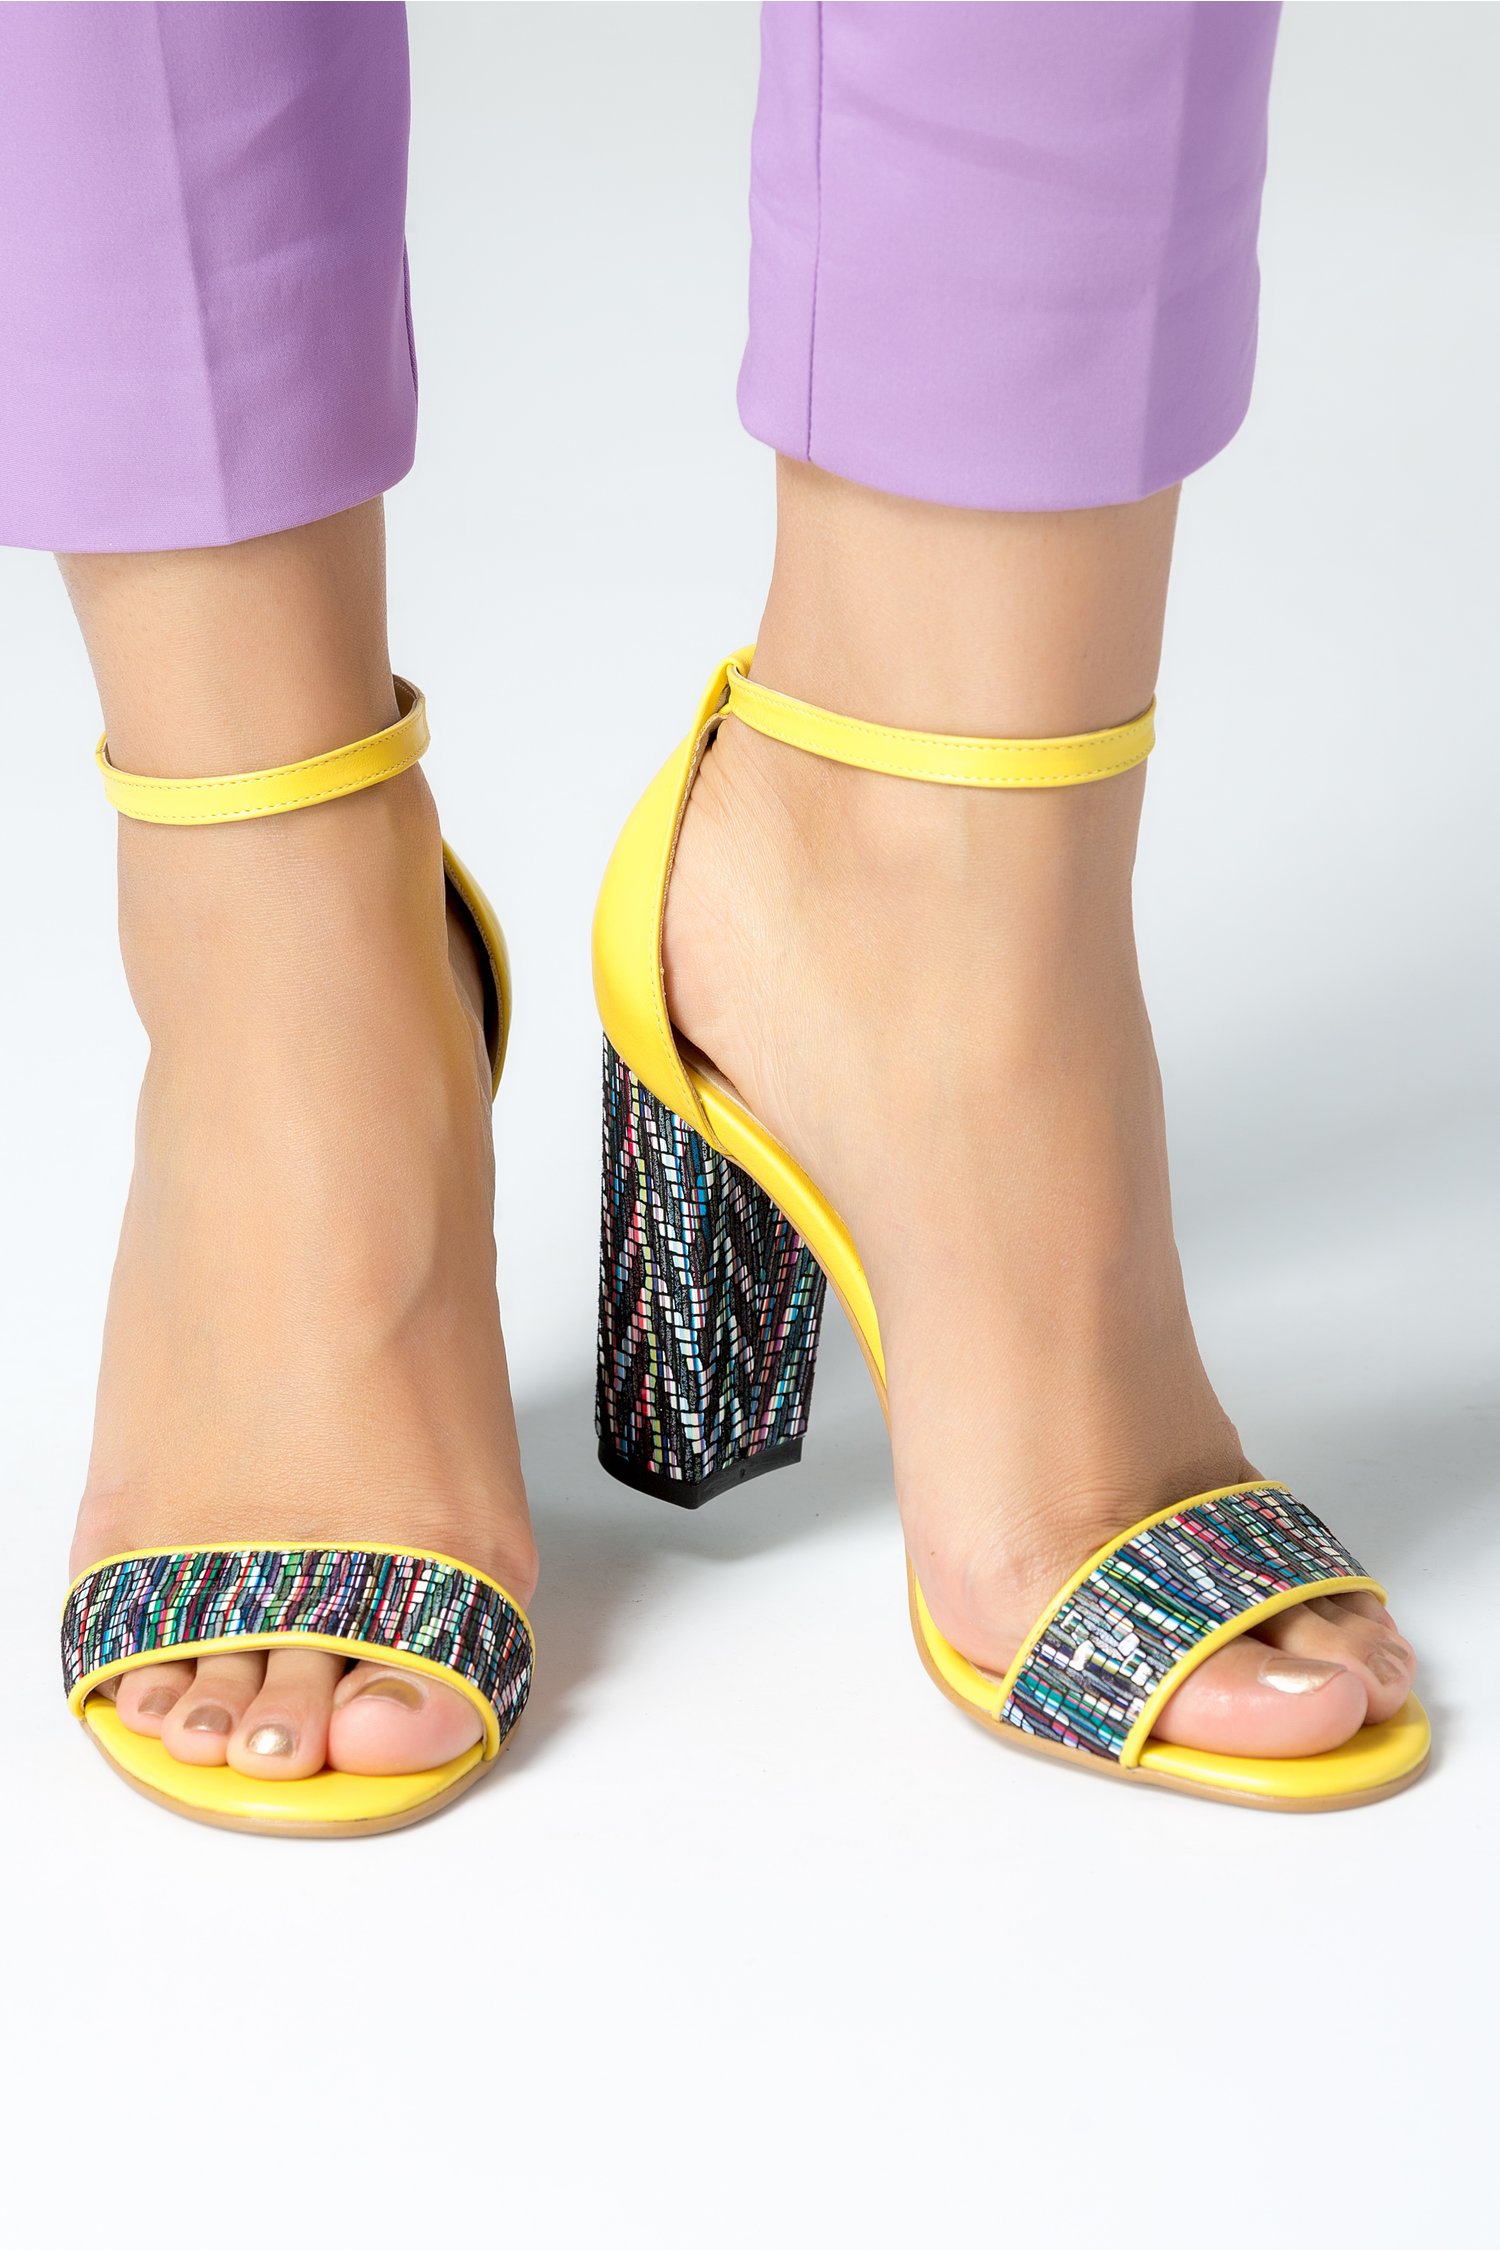 Sandale dama galbene cu insertii colorate